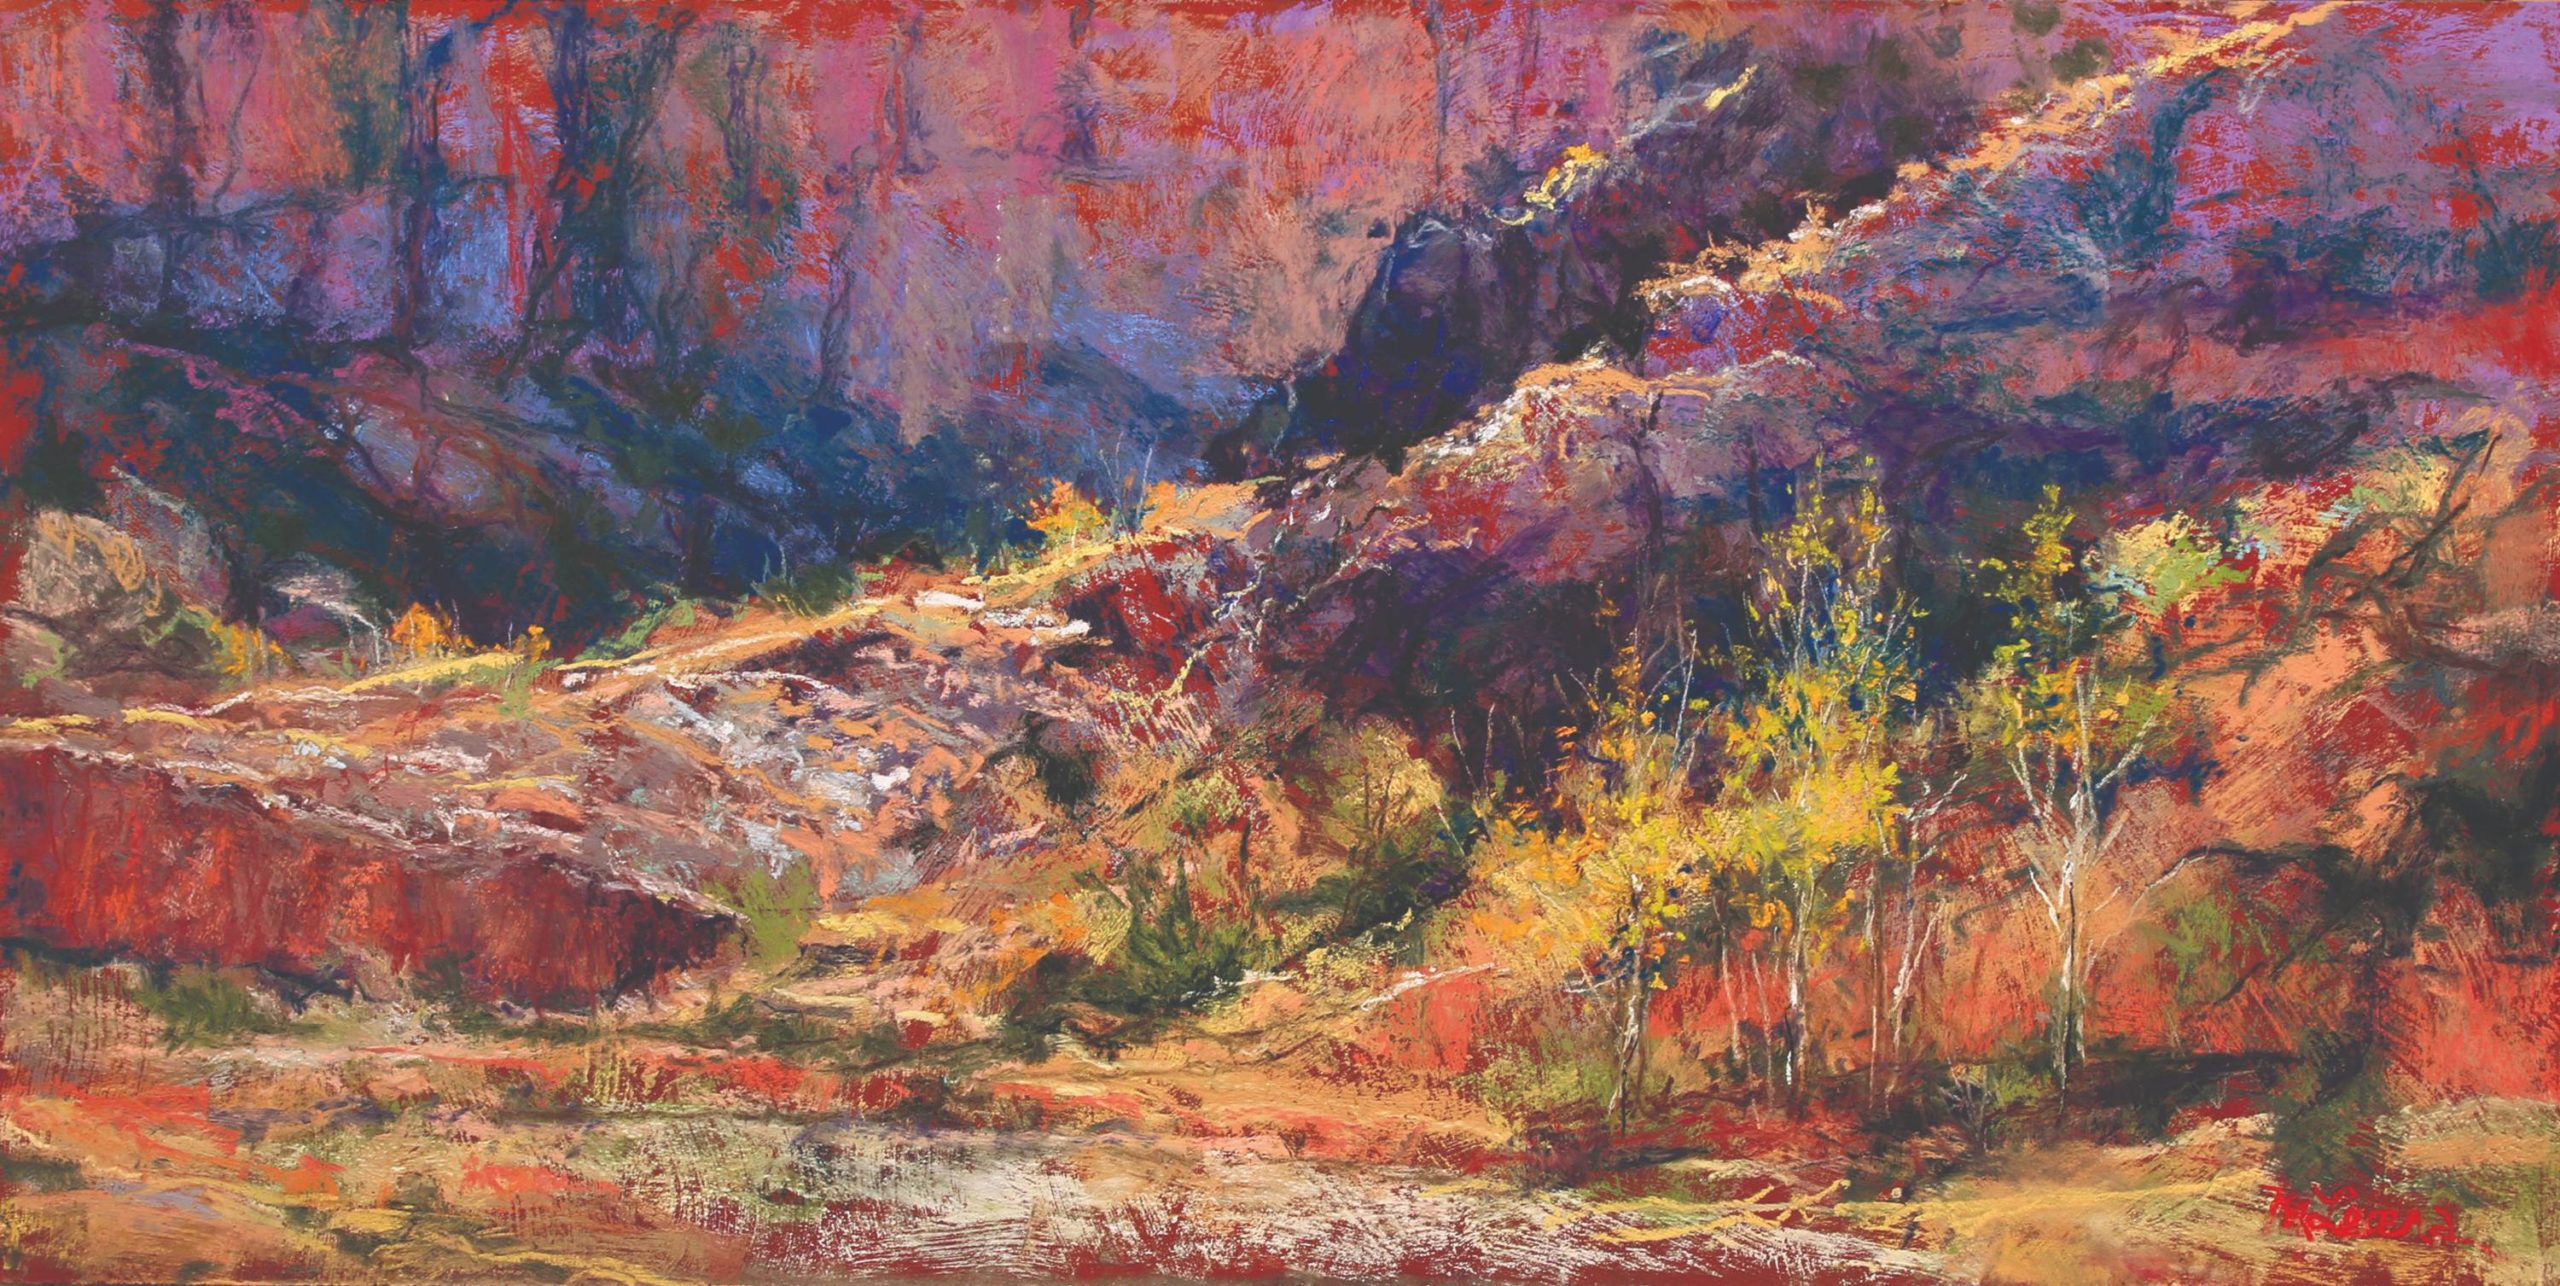 Margi Lucena, "San Lorenzo," pastel painting